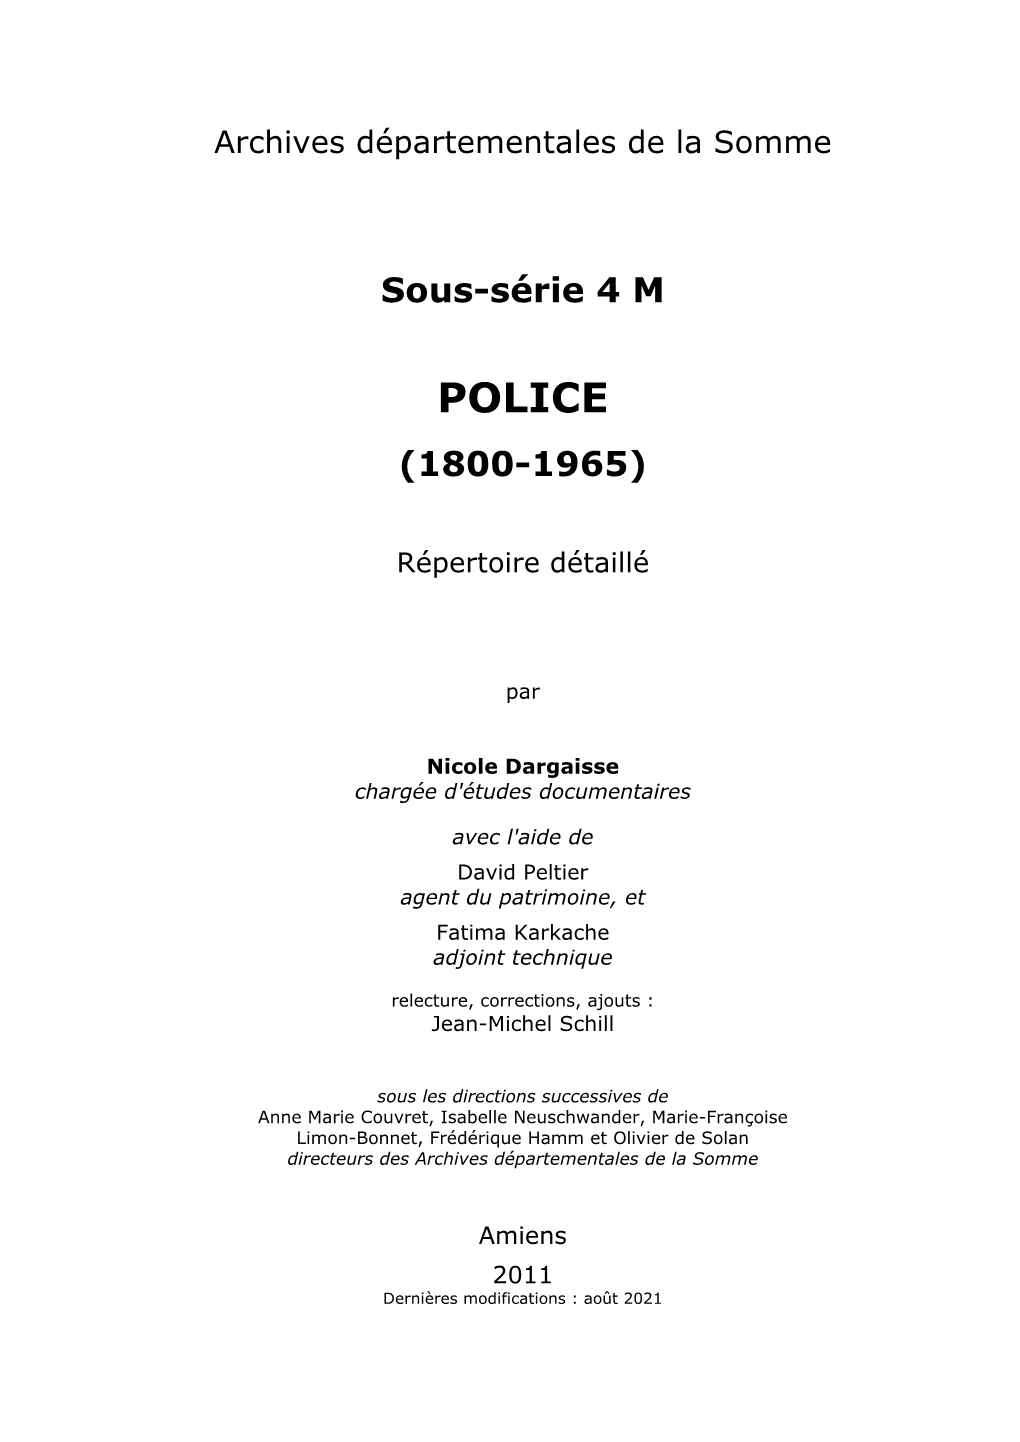 Police (1800-1965)